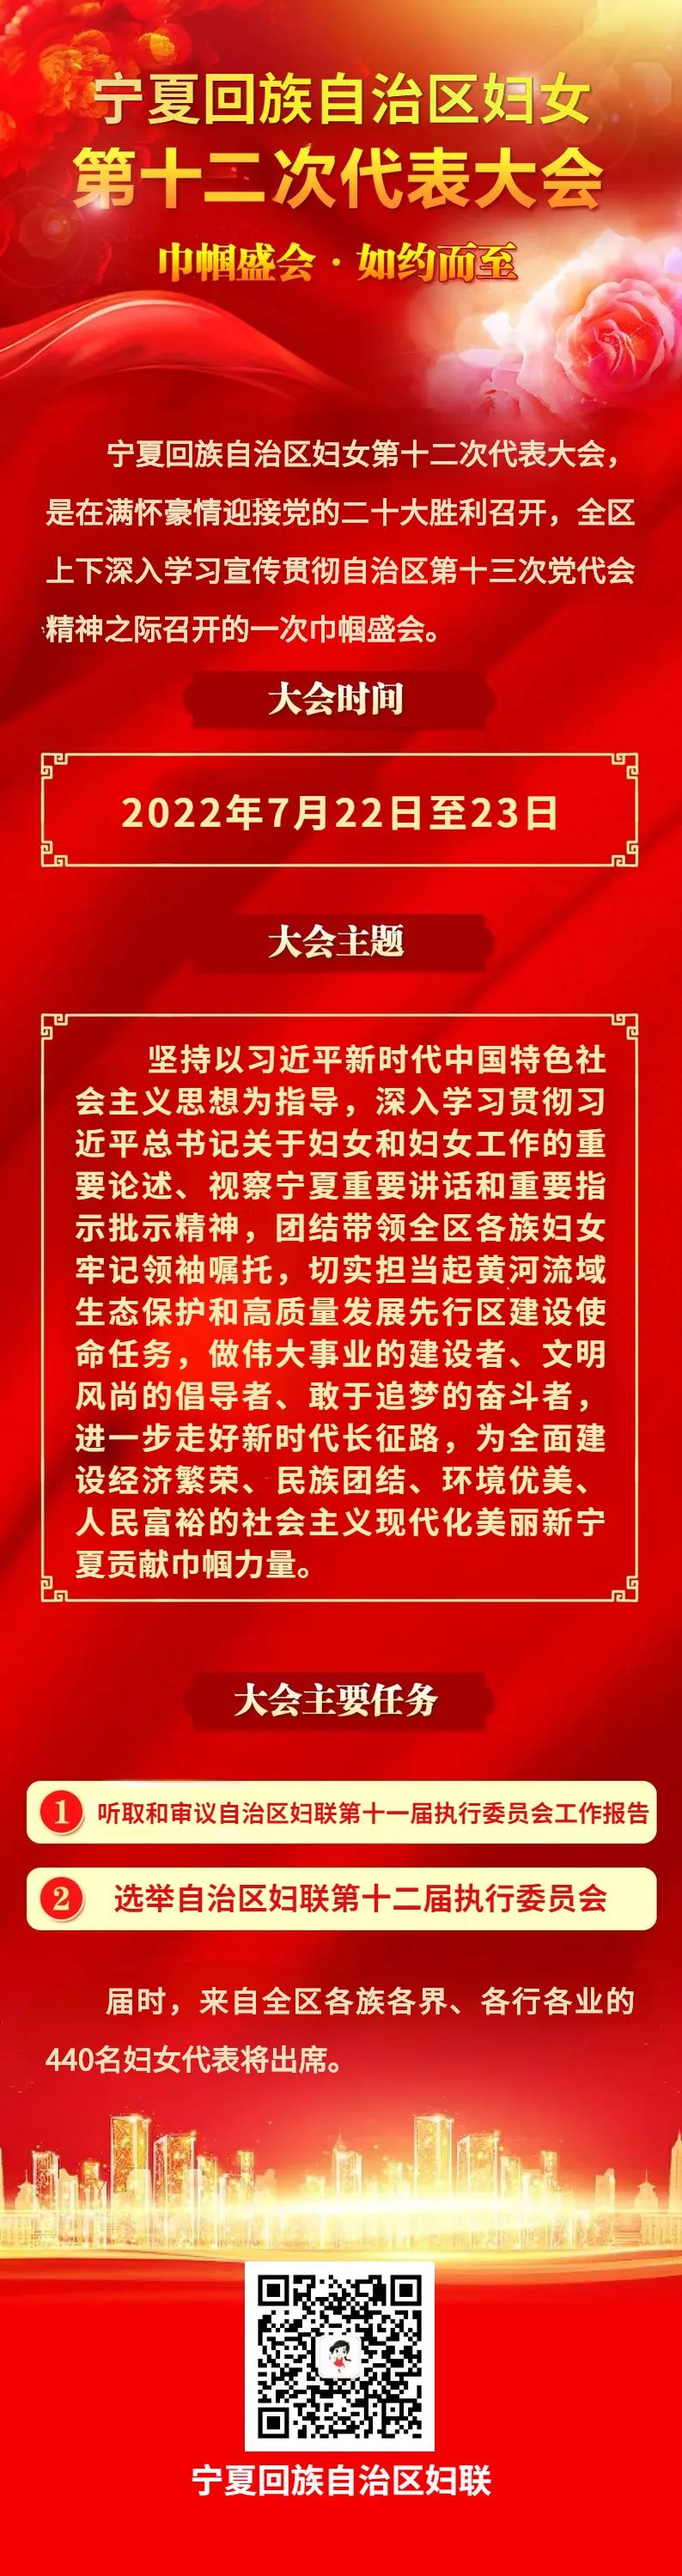 宁夏妇女第十二次代表大会将于7月22日至23日在银川召开